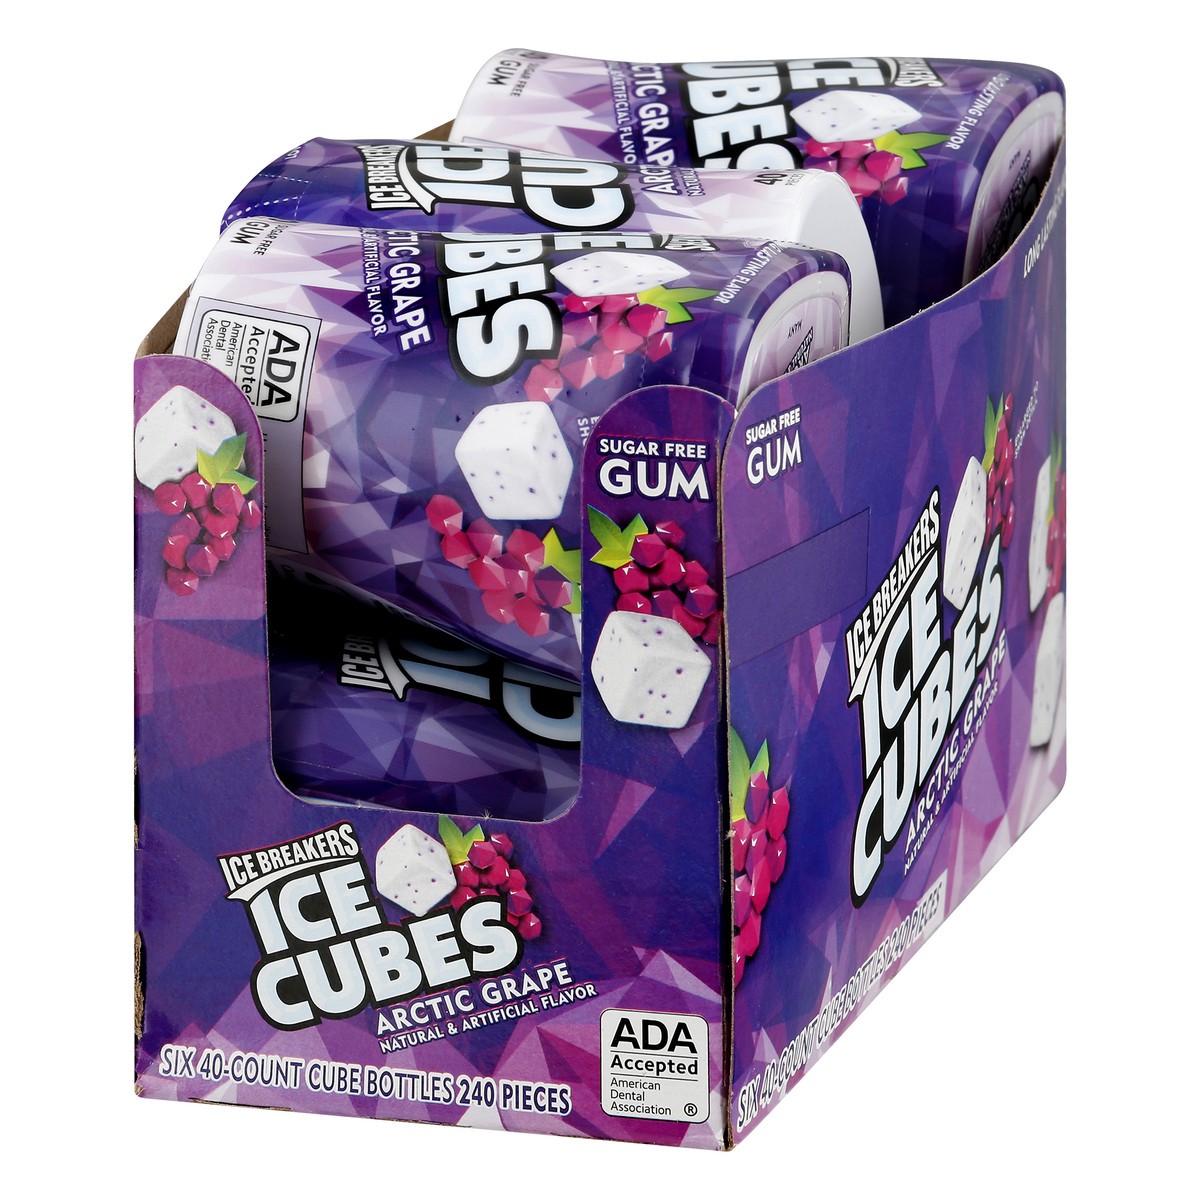 slide 3 of 10, Ice Breakers Gum, Sugar free, Arctic Grape, Ice Cubes, 6 ct